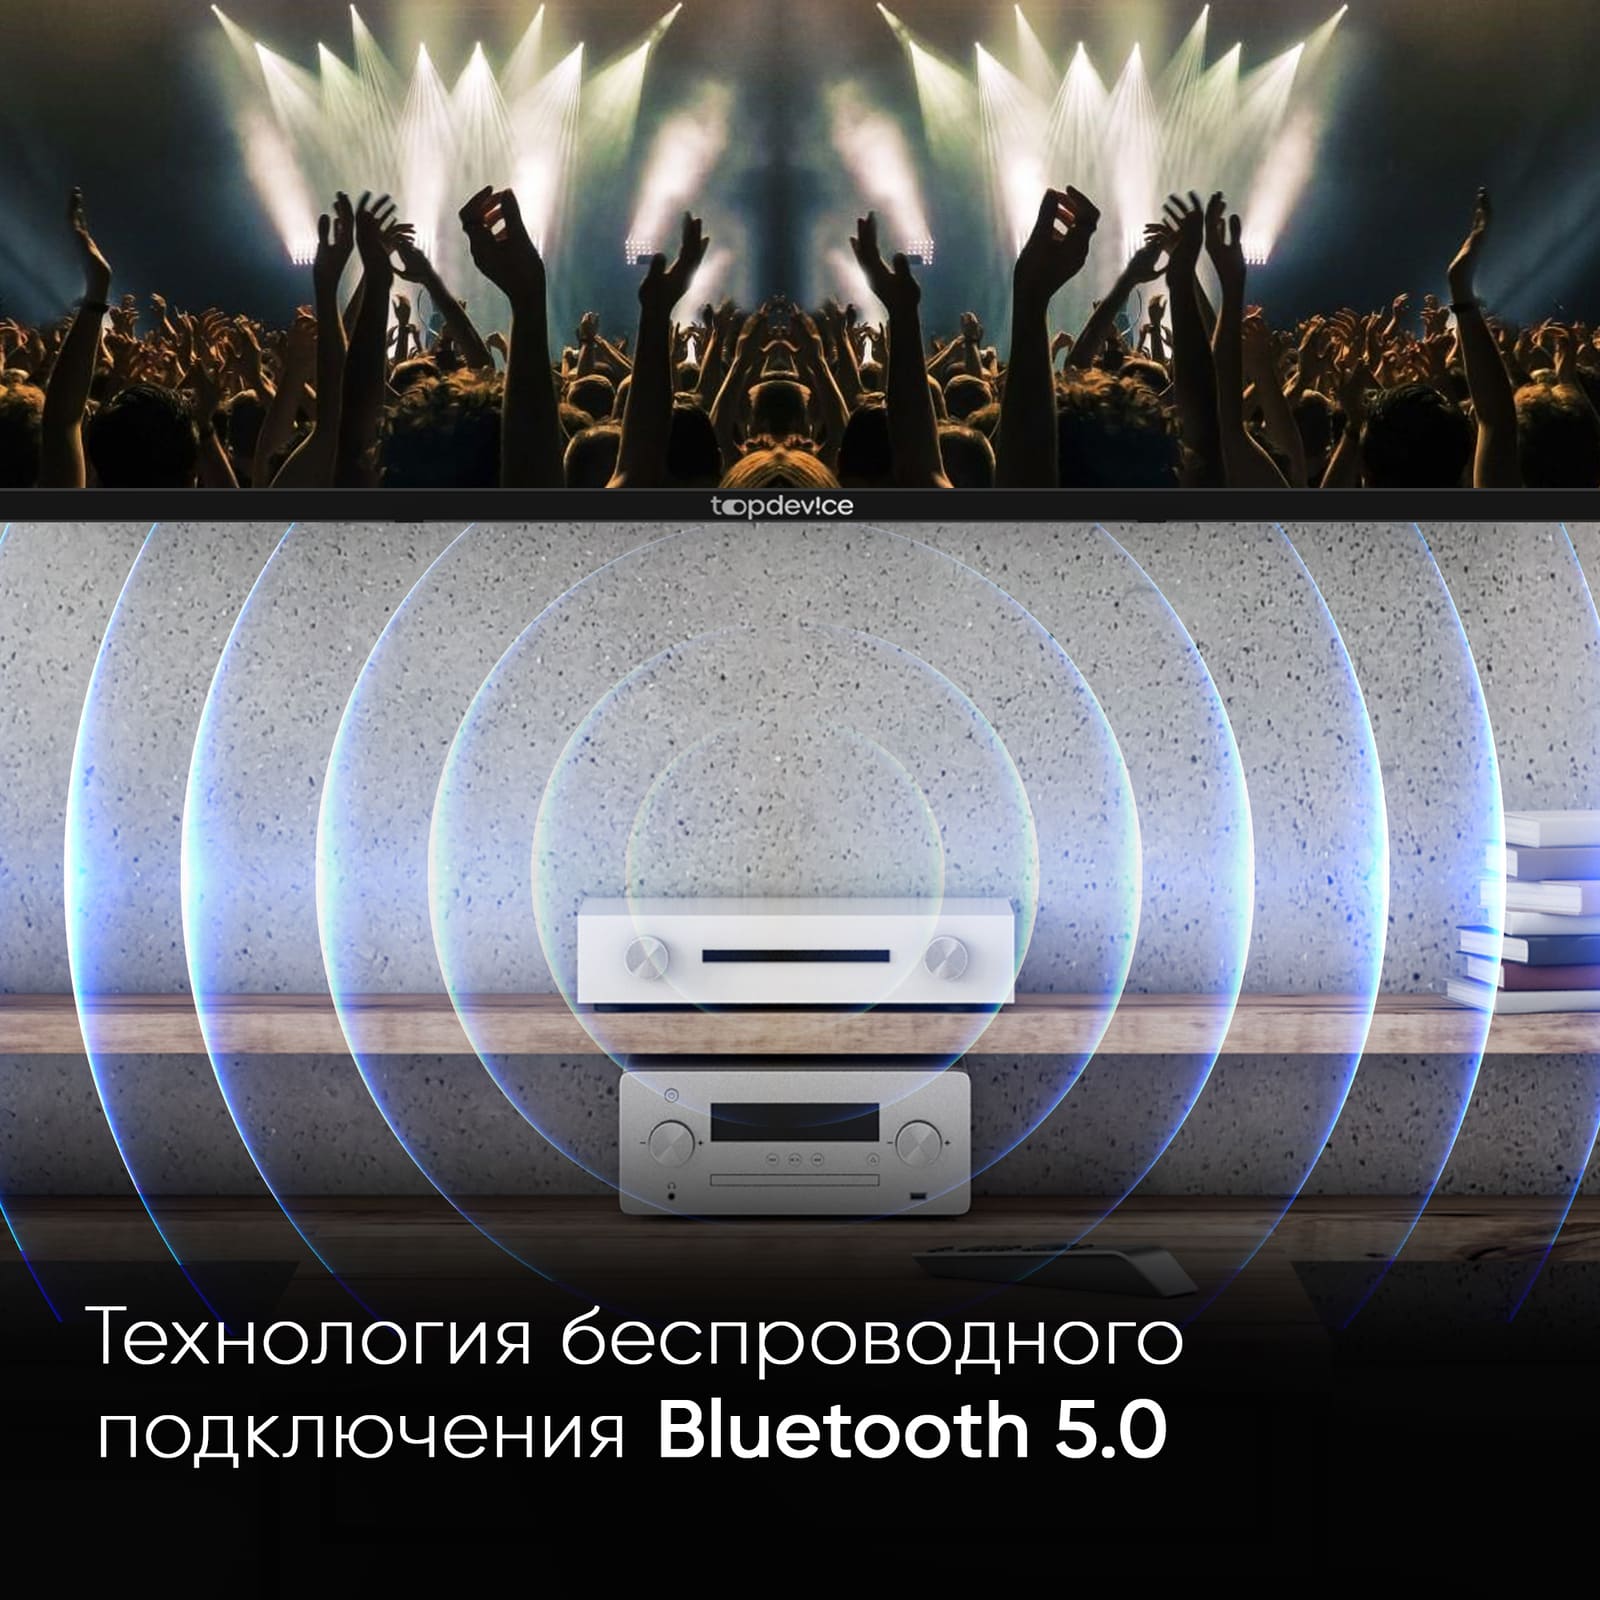 Технология беспроводного подключения Bluetooth 5.0